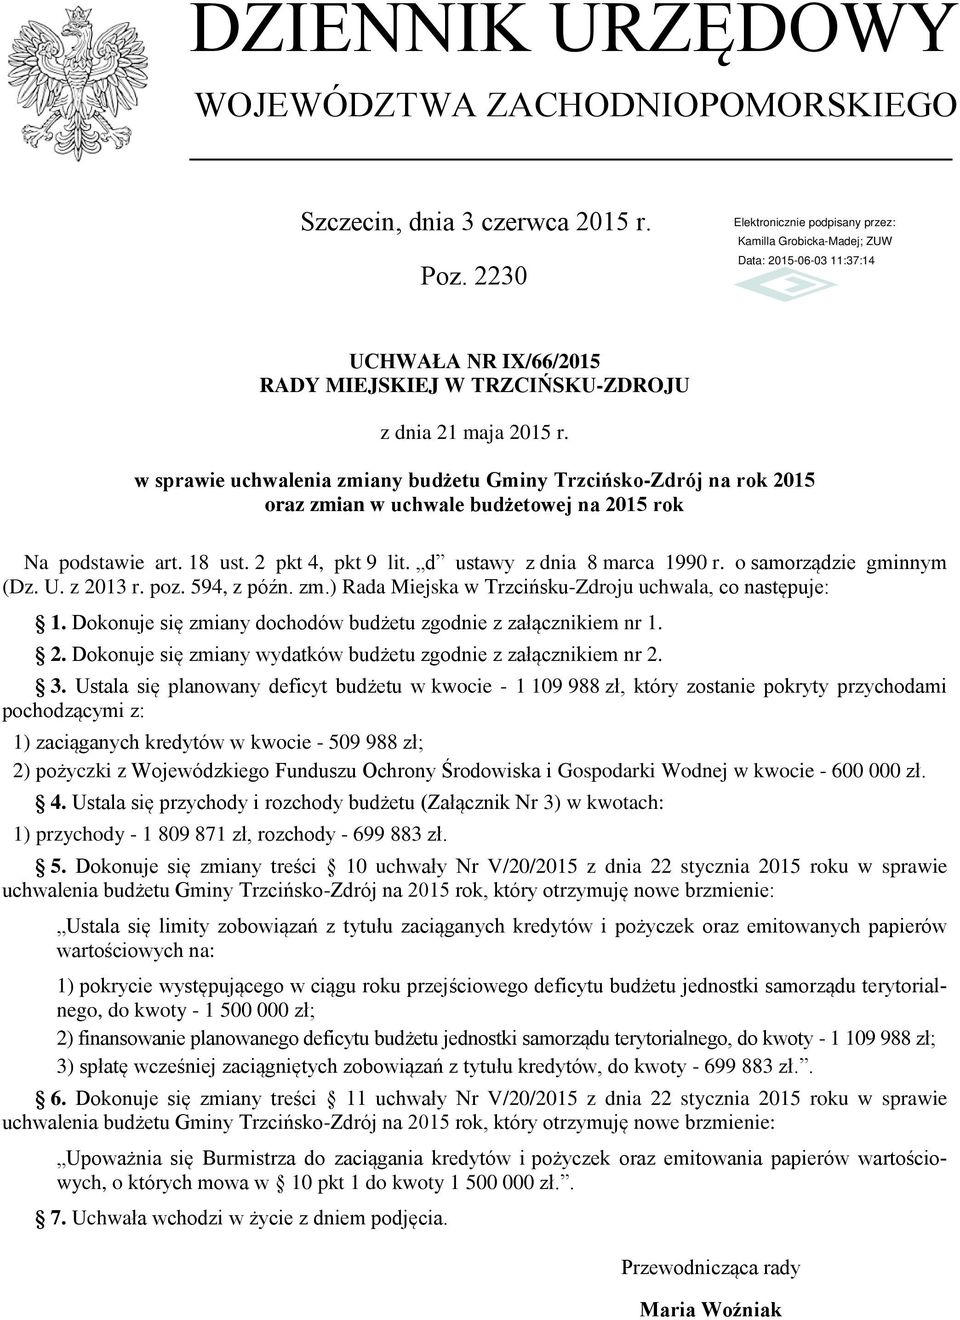 o samorządzie gminnym (Dz. U. z 2013 r. poz. 594, z późn. zm.) Rada Miejska w Trzcińsku-Zdroju uchwala, co następuje: 1. Dokonuje się zmiany dochodów budżetu zgodnie z załącznikiem nr 1. 2. Dokonuje się zmiany wydatków budżetu zgodnie z załącznikiem nr 2.